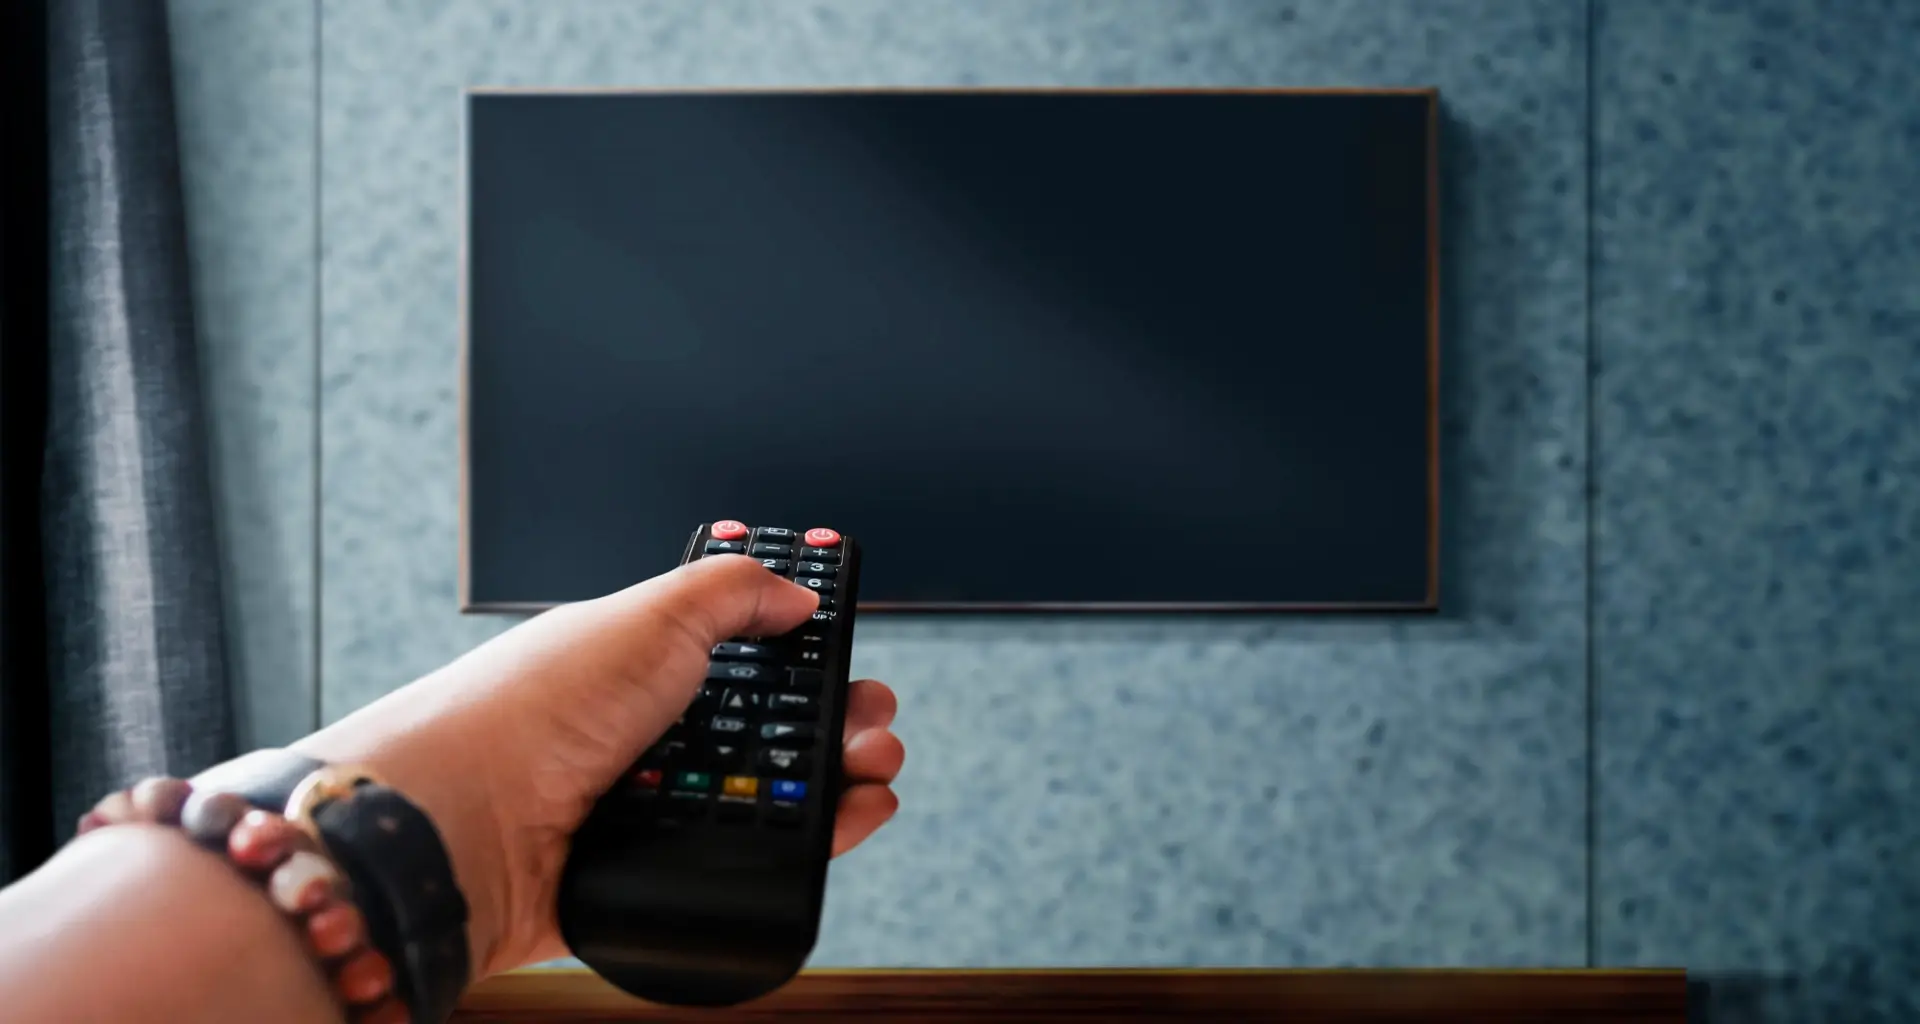 Como escolher o tamanho da TV?